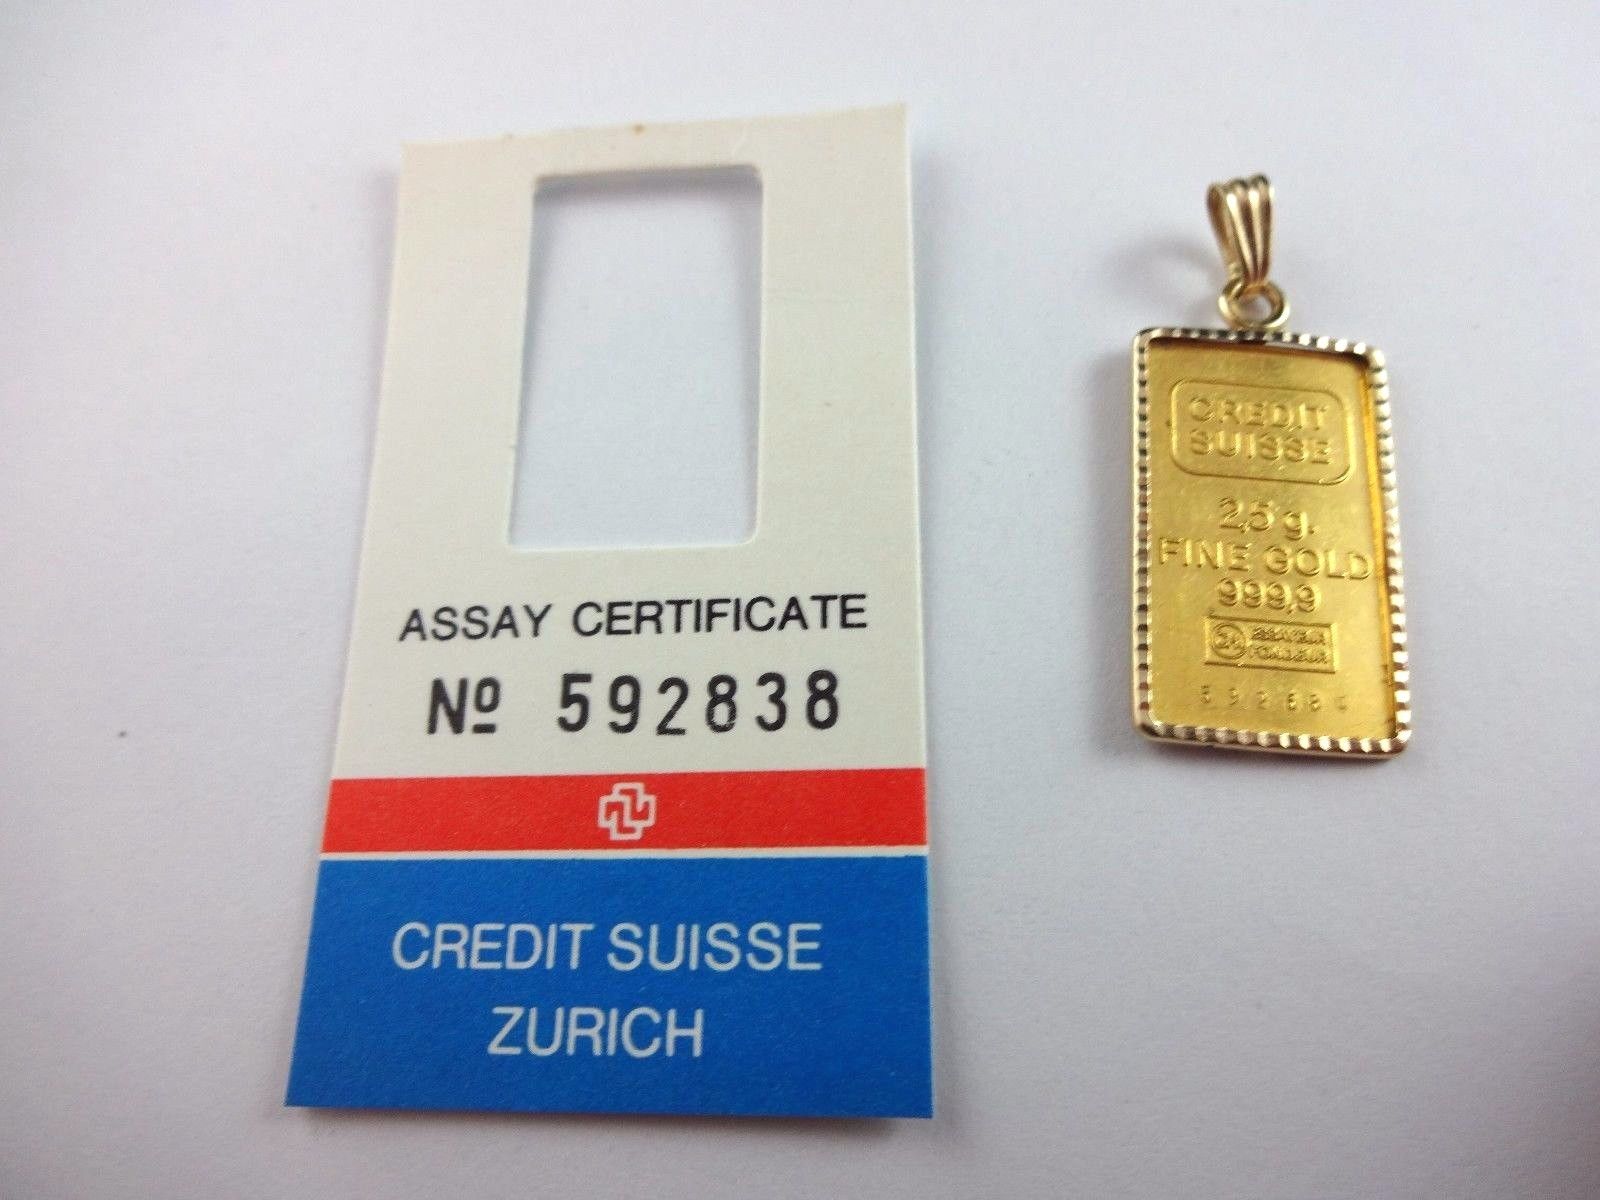 2.5 Gram Credit Suisse .9999 Fine Gold Bullion Bar Ingot in 14k Bezel Pendant